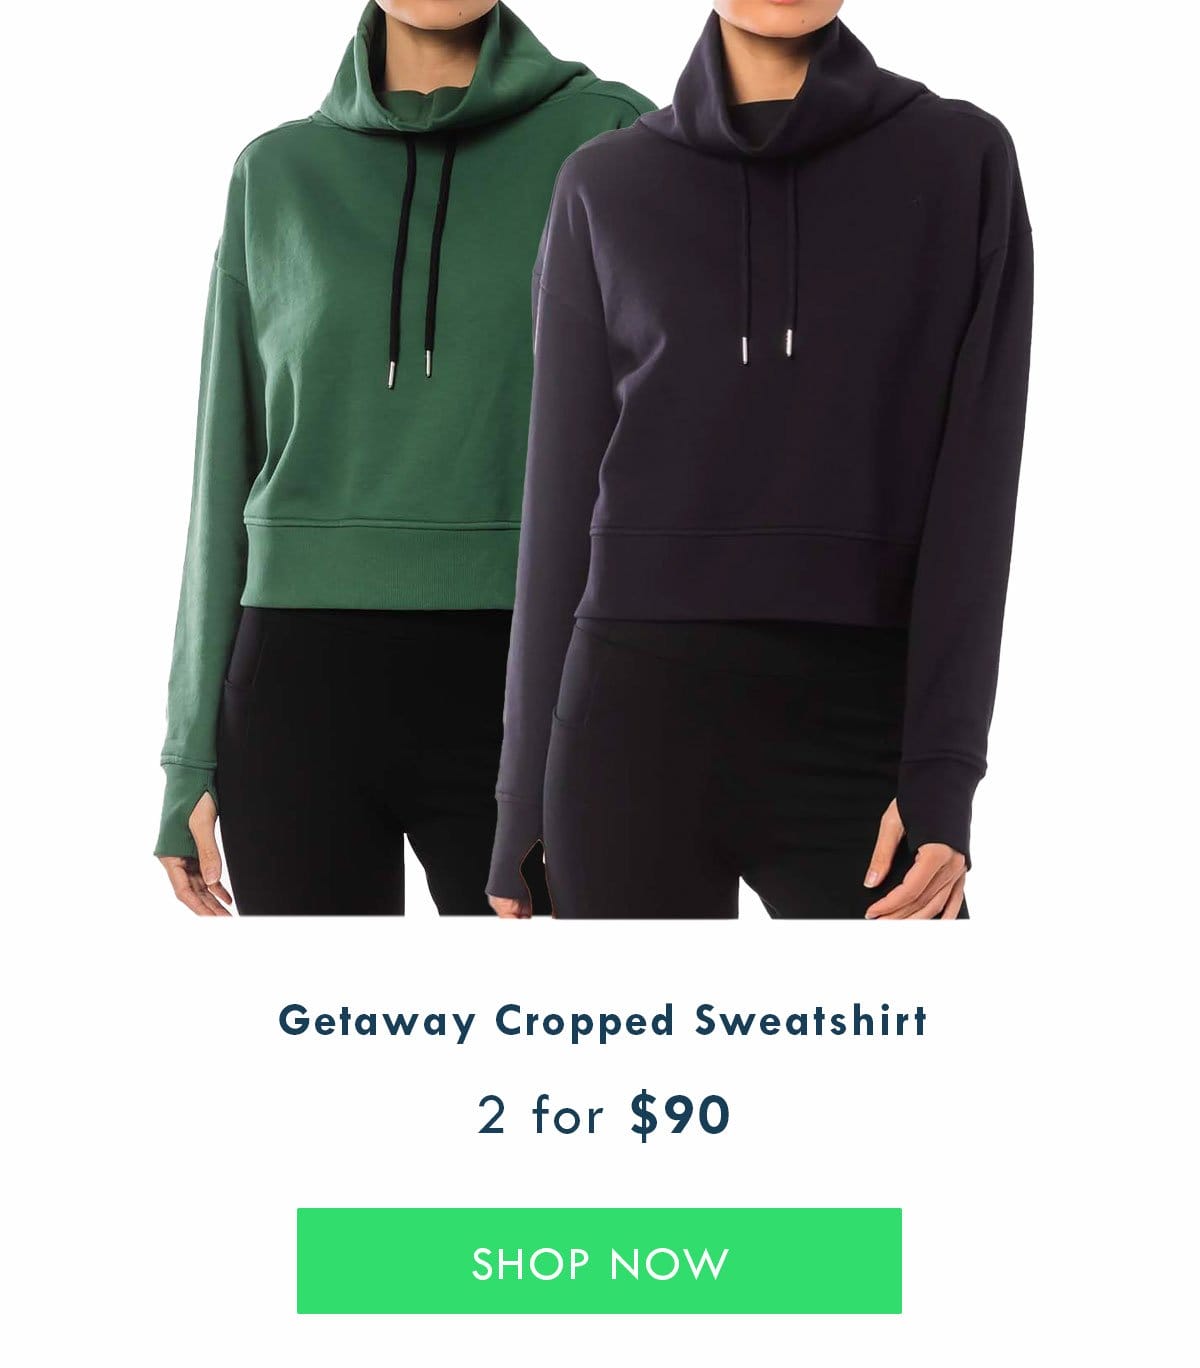 Getaway Cropped Sweatshirt